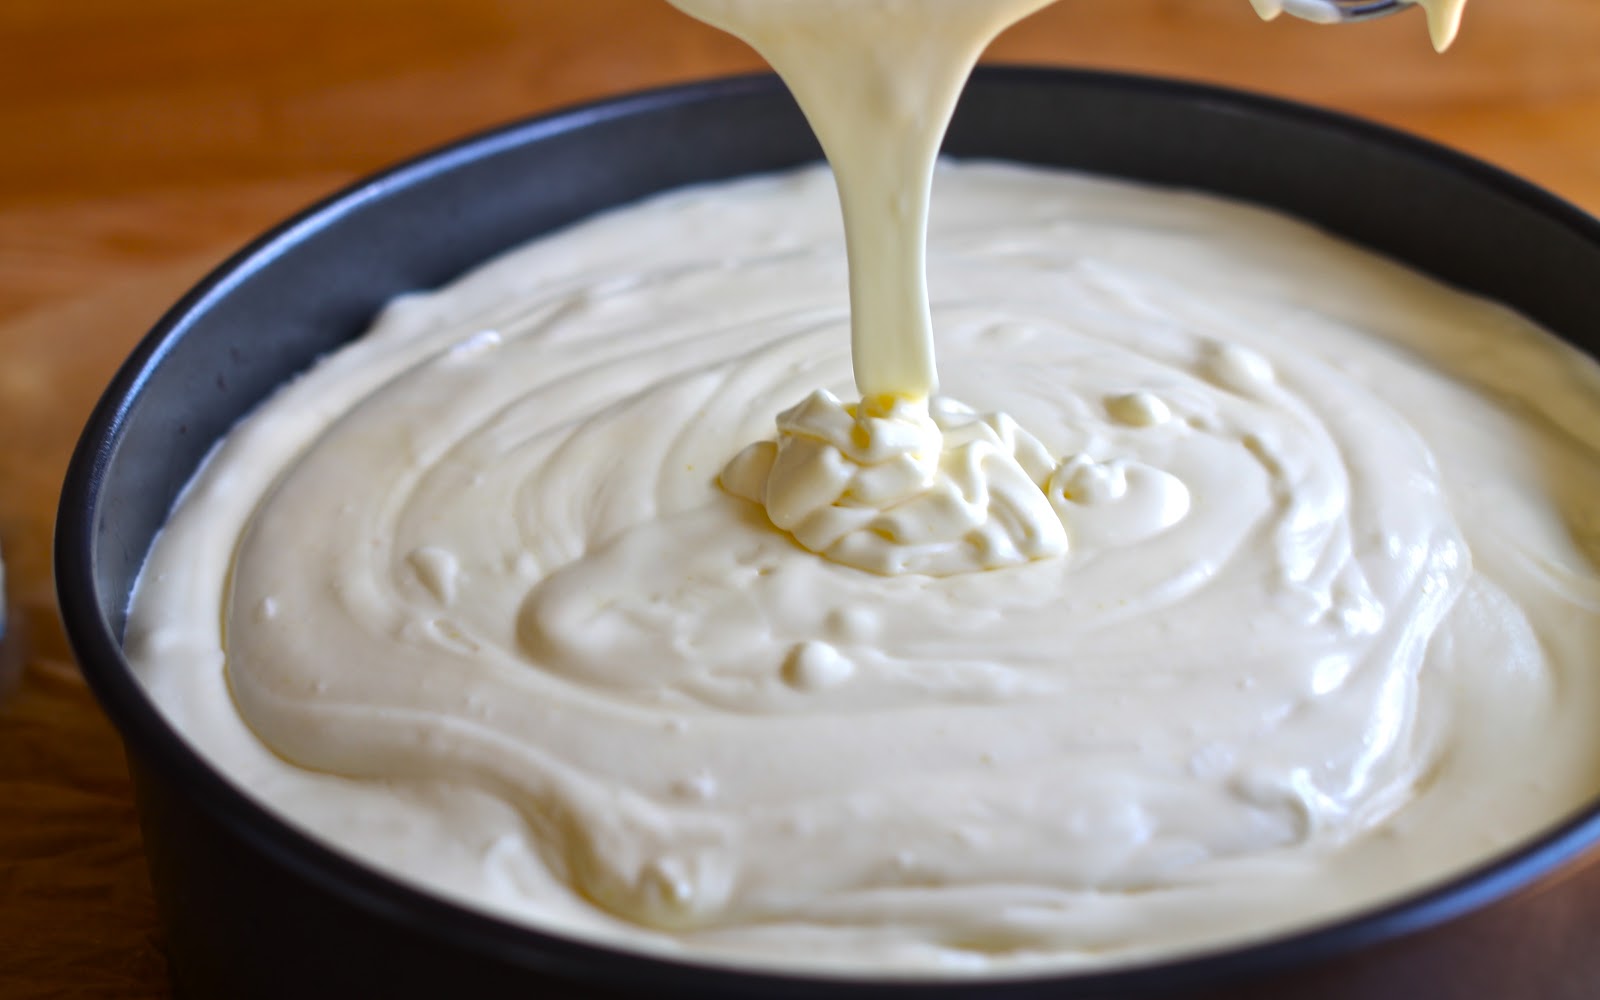 Белый шоколад: состав, применение в кулинарии – 4 рецепта. Как сделать белый шоколад в домашних условиях